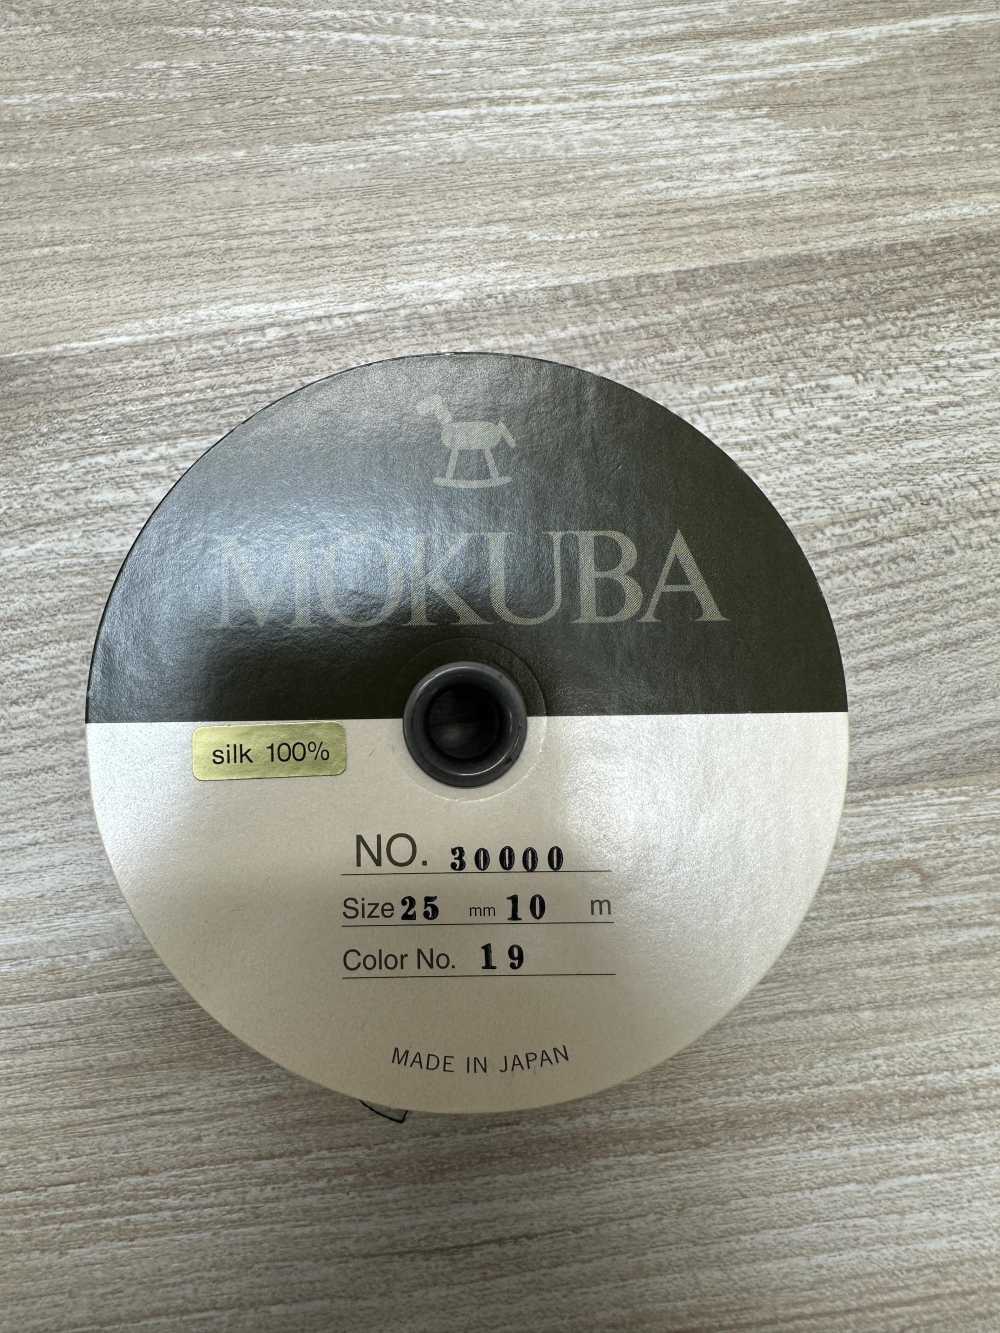 30000 MOKUBA シルクサテン リボンテープ 【アウトレット】[リボン・テープ・コード] モクバ